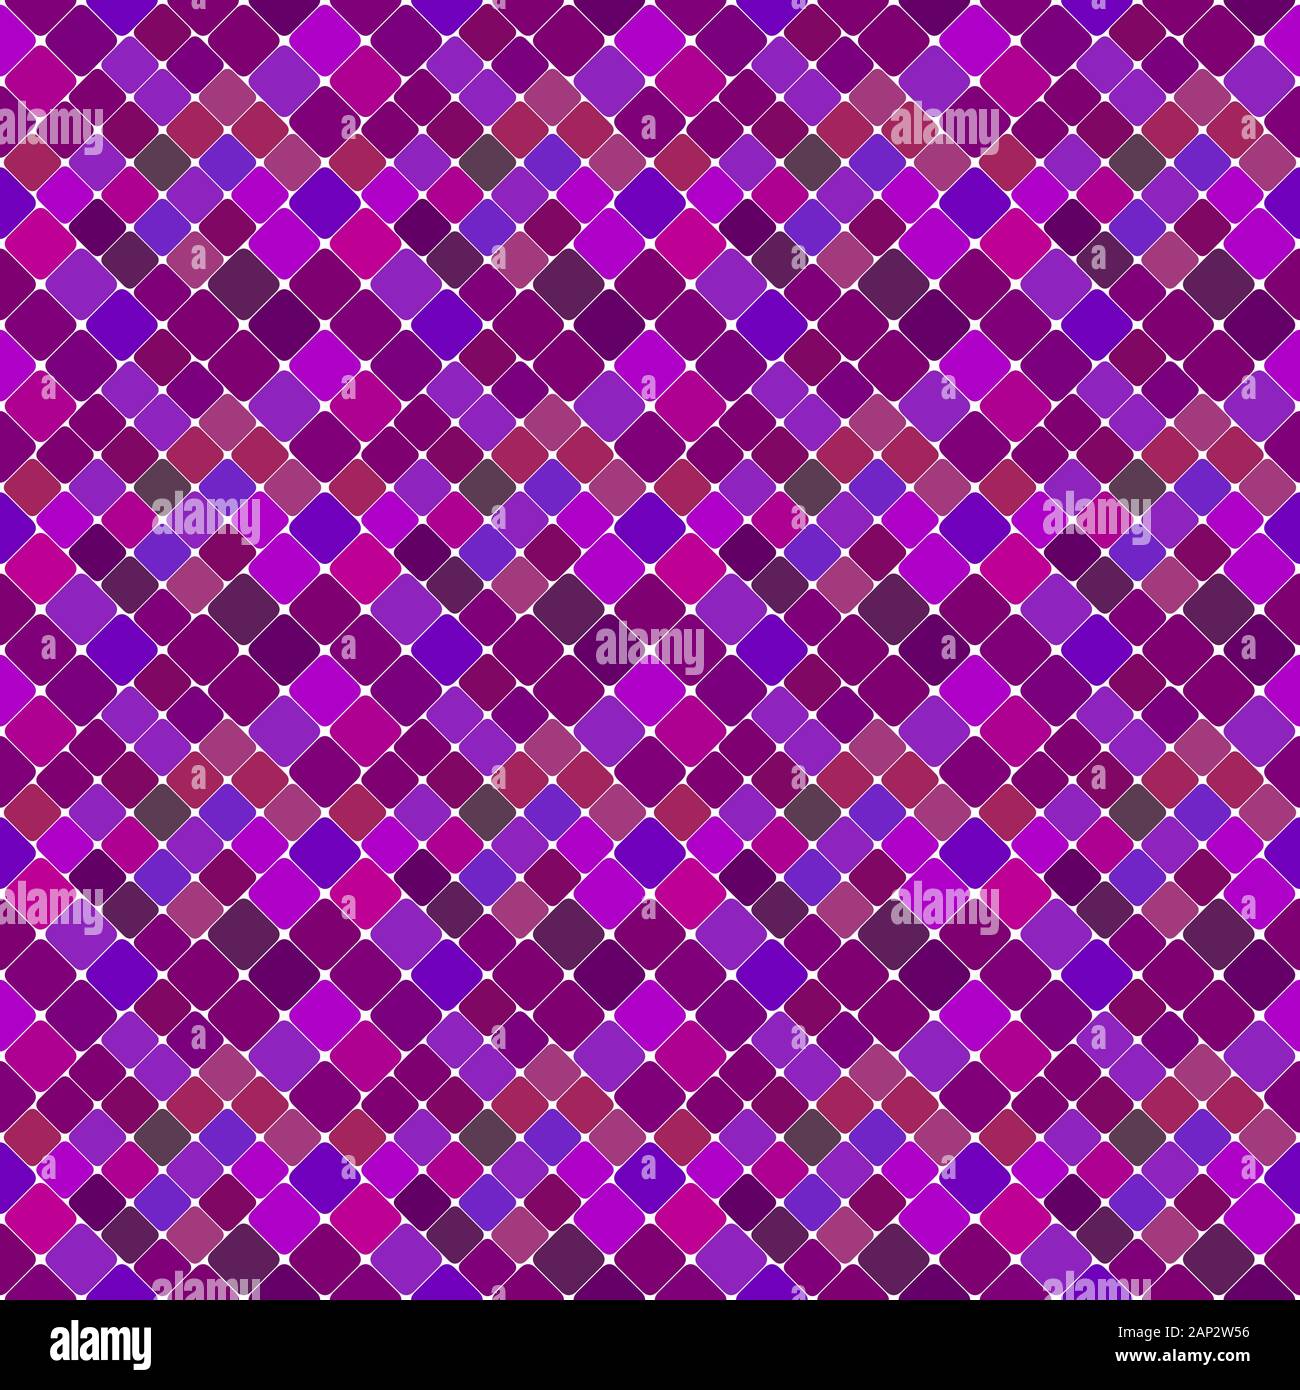 Nahtlose violett abstrakte quadratischen Muster Hintergrund Design - Lila wiederholenden geometrischen Vector Illustration Stock Vektor